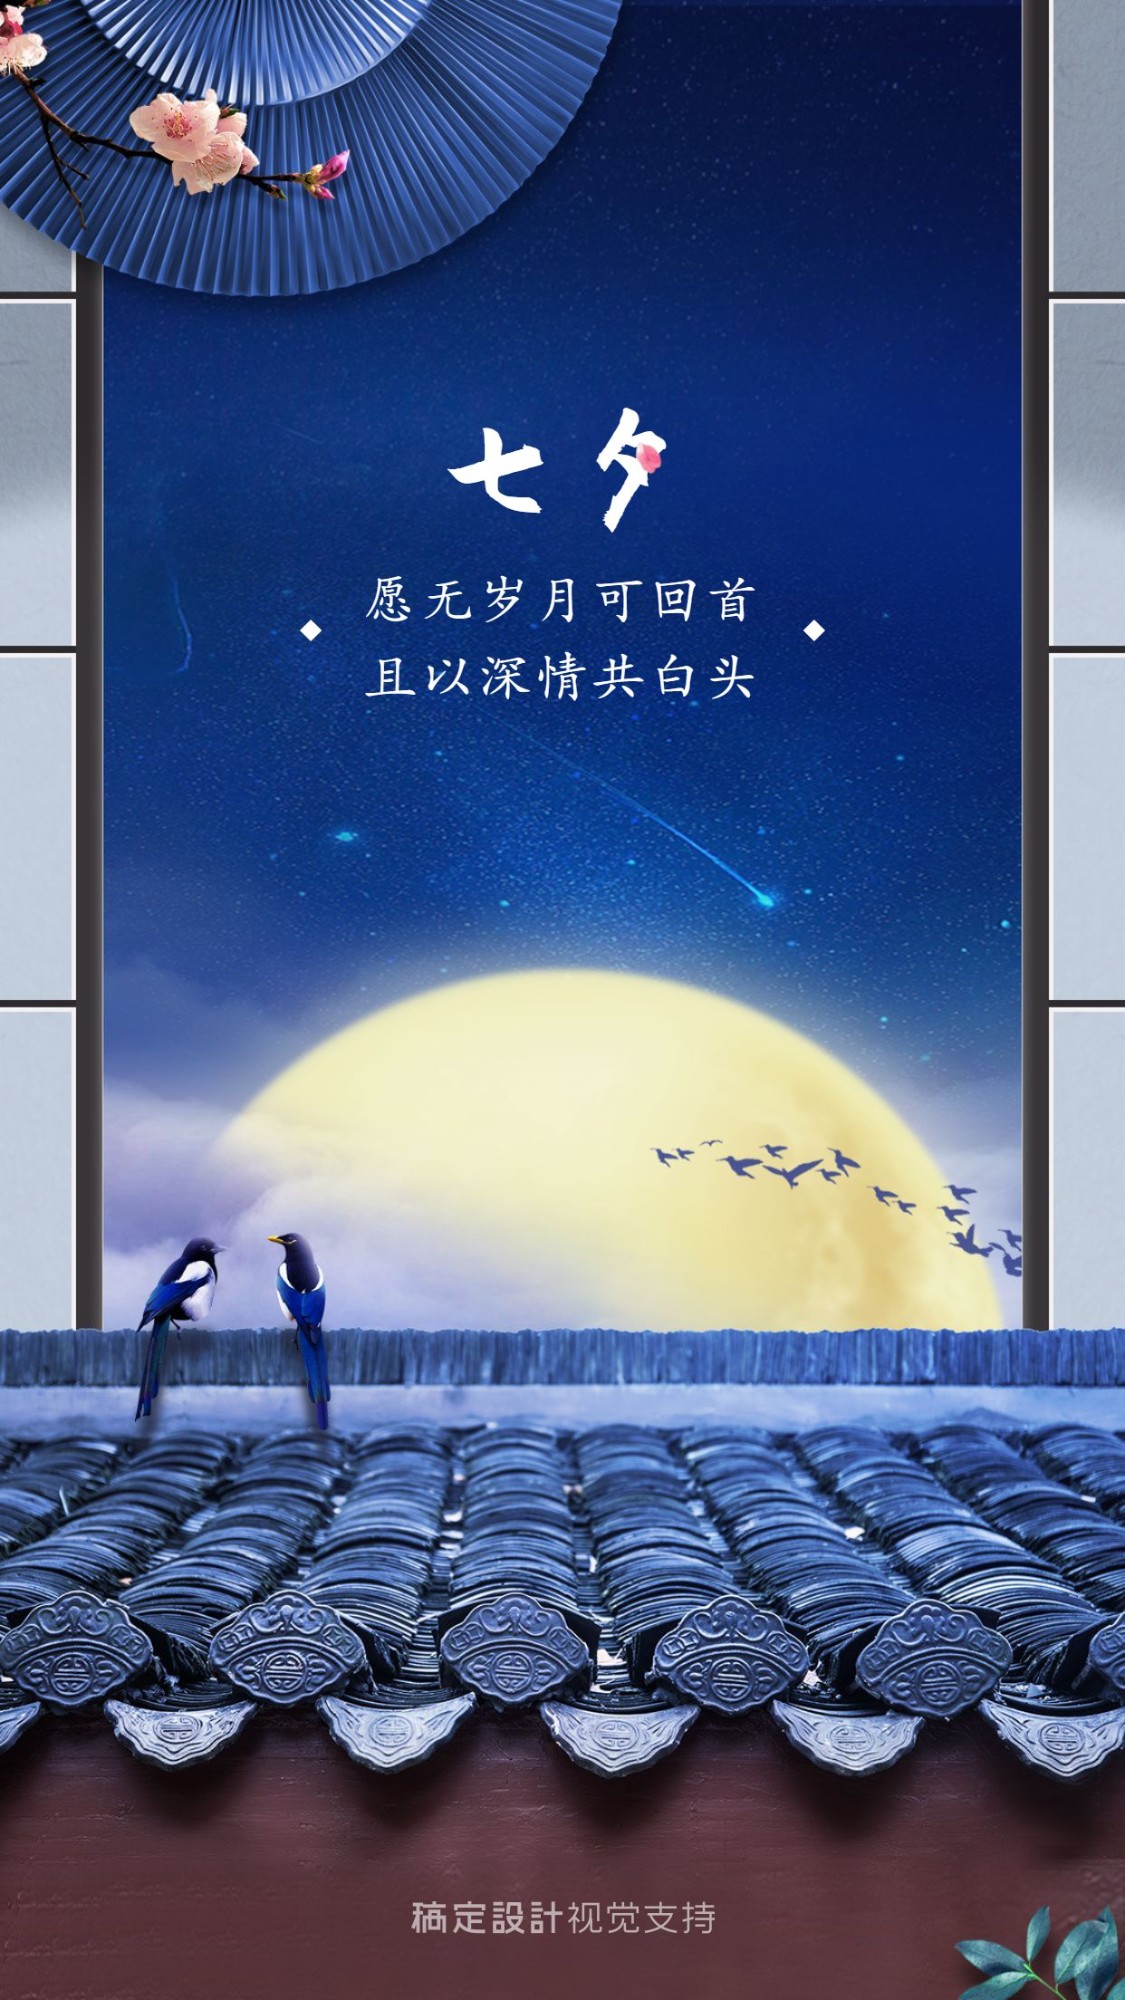 七夕情人节节日祝福插画手机海报_图片模板素材-稿定设计